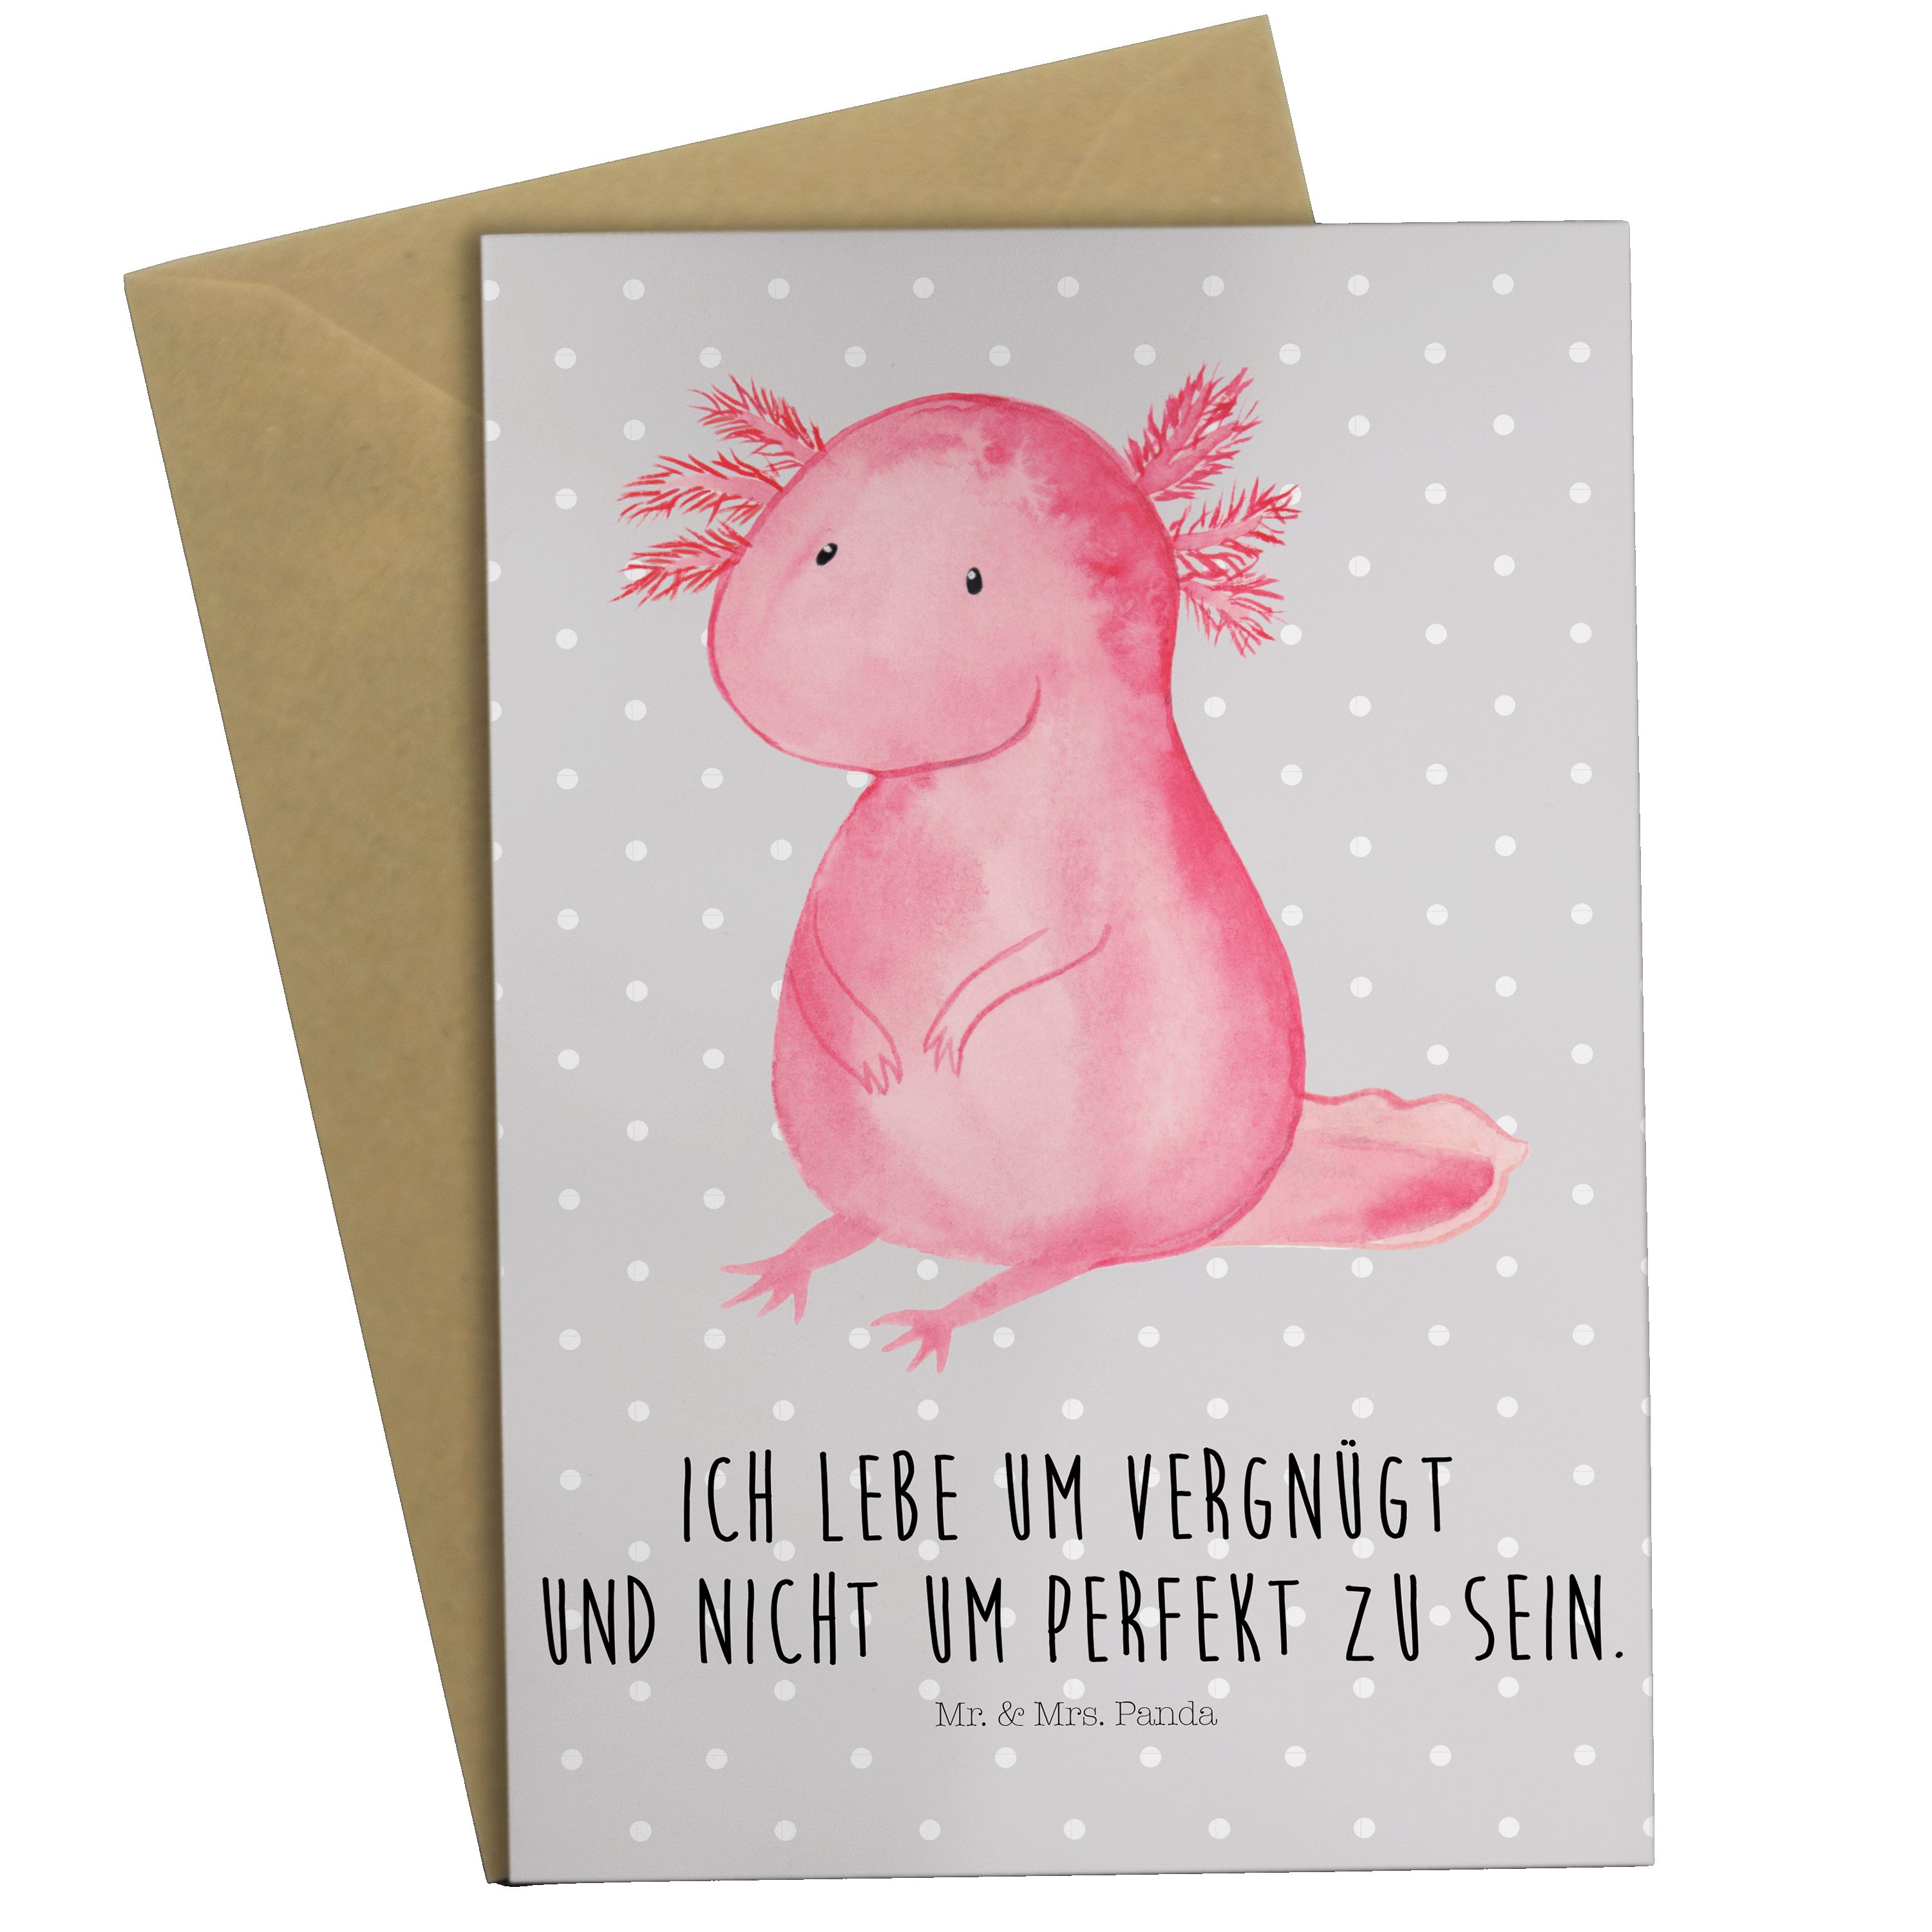 Mr. & Mrs. Panda Grußkarte Axolotl - Grau Pastell - Geschenk, vergnügt, Glückwunschkarte, Liebe | Grußkarten